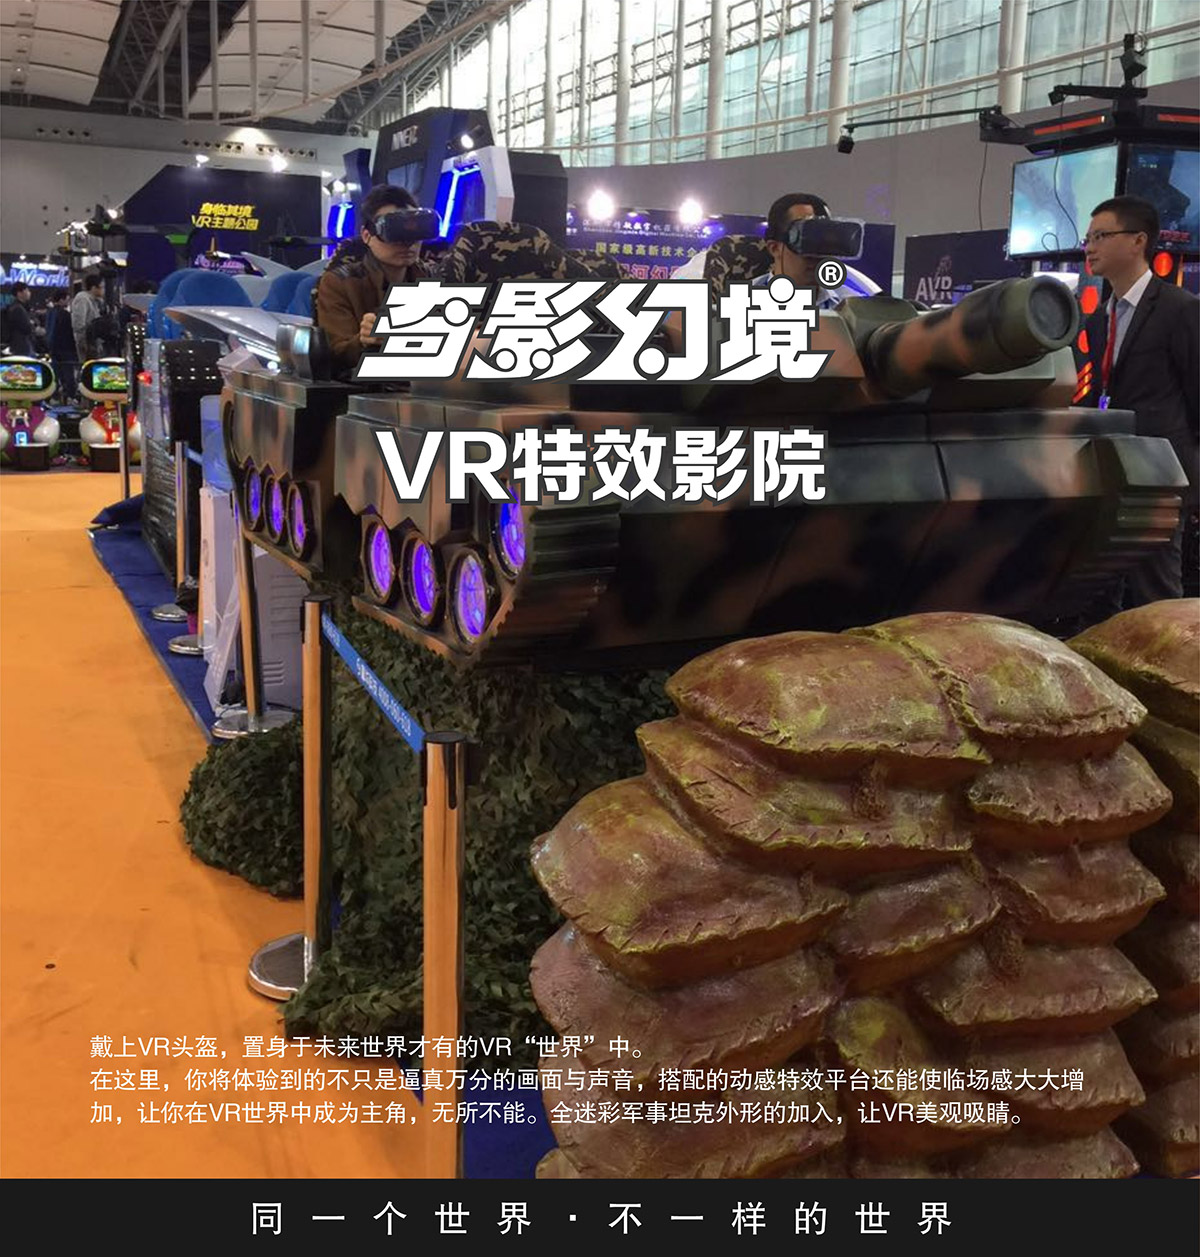 展览展示首款VR特效影院坦克对战.jpg